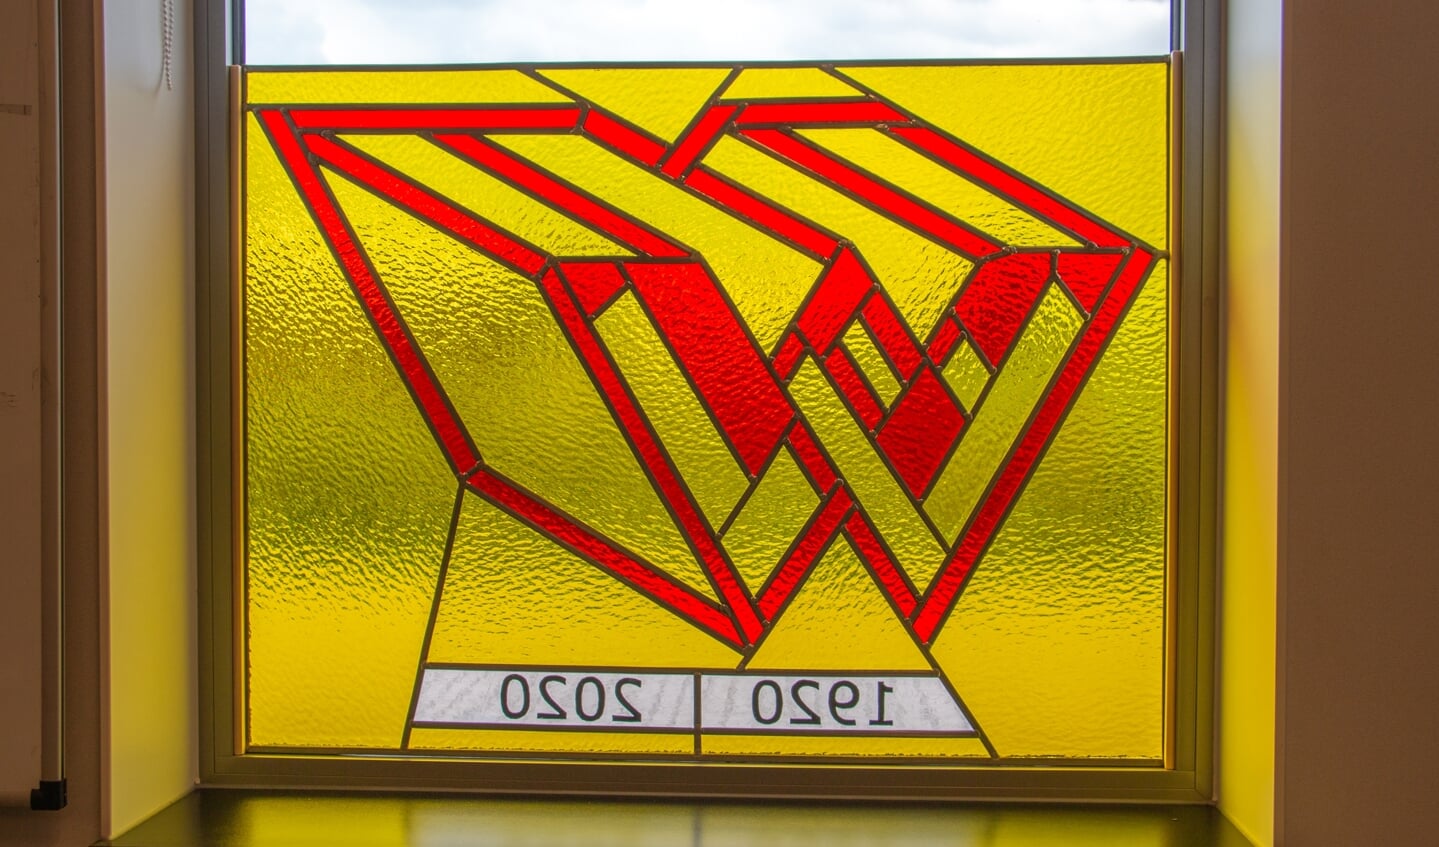 Het glas-in-lood raam markeert het 100-jarige jubileum van de Wissels Groep in Zutphen. Foto: Liesbeth Spaansen